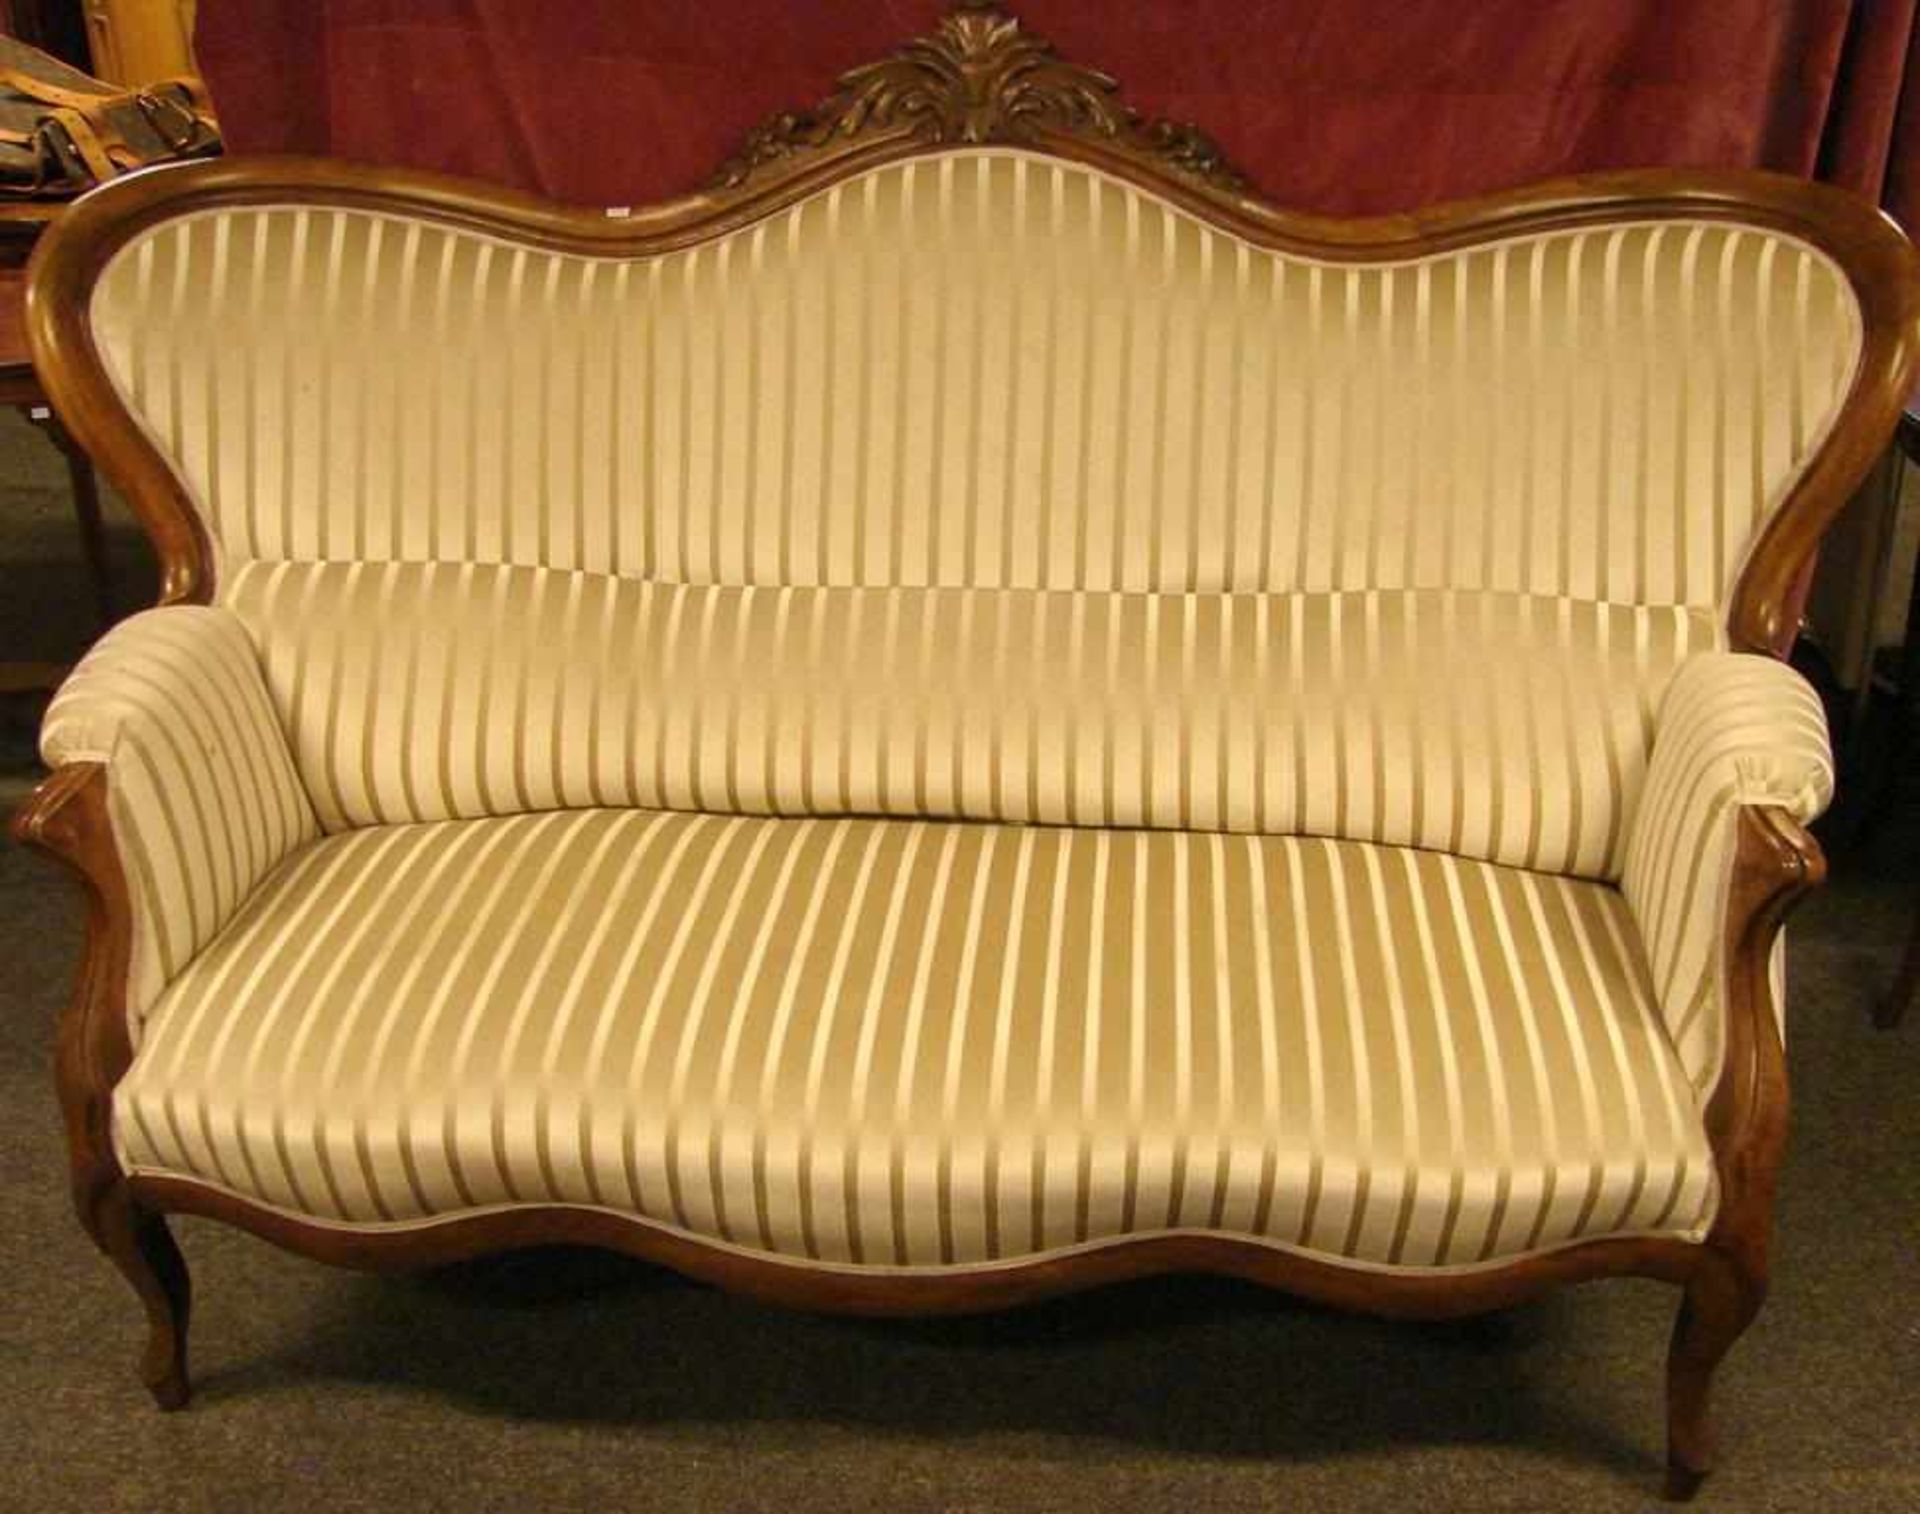 Sofa, Nussbaum, um 1890, Breite ca. 170 cm, guter Zustand, auch der Bezug - Bild 2 aus 3